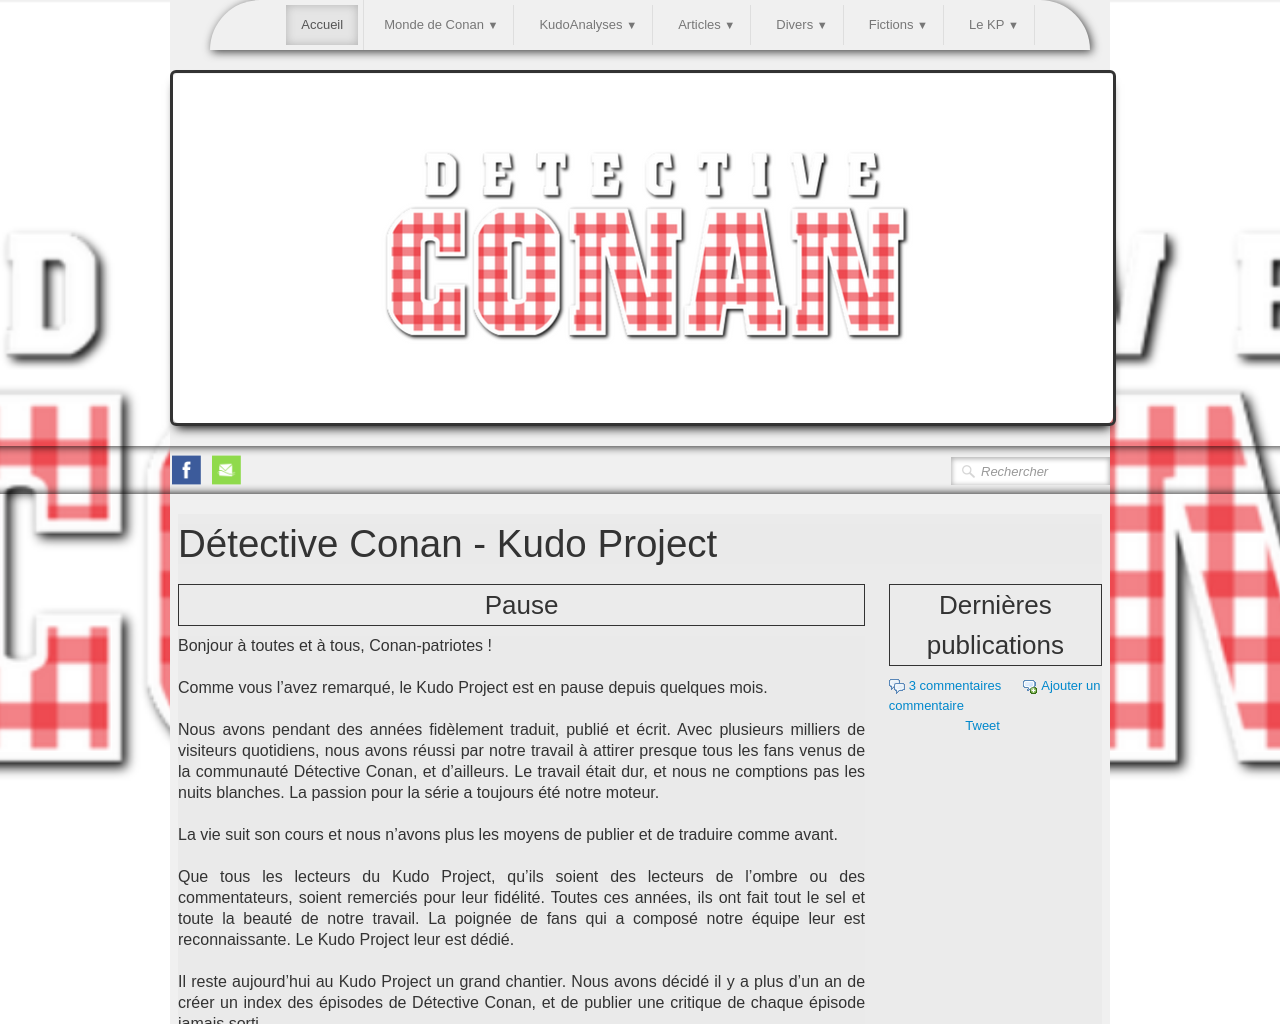 kudoproject.net